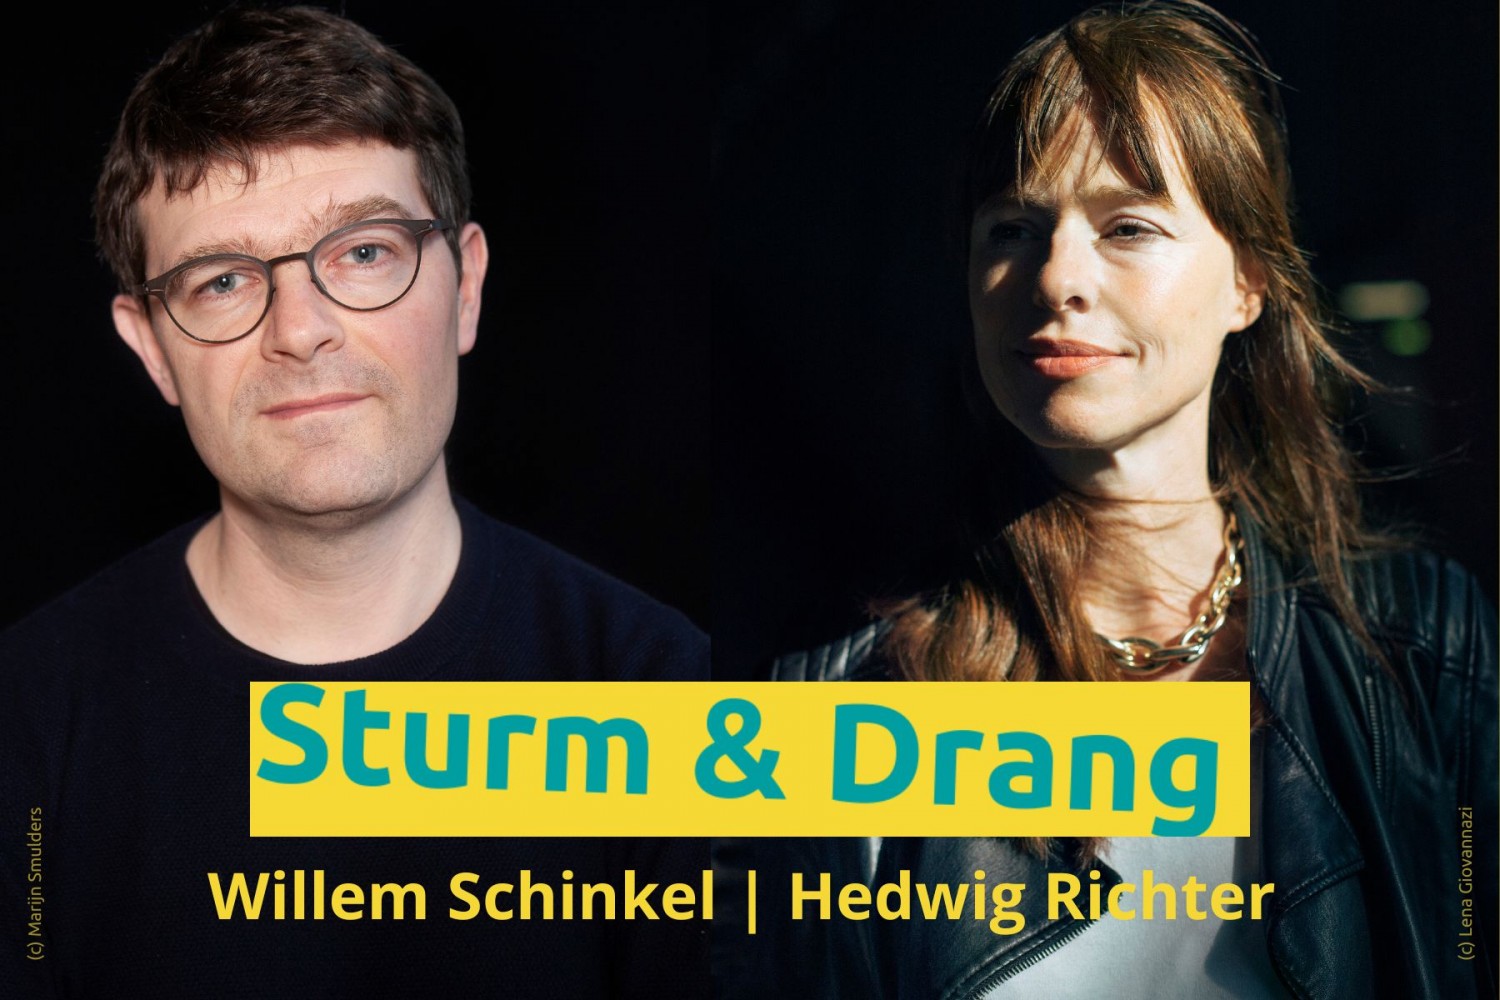 Hedwig Richter en Willem Schinkel over democratie